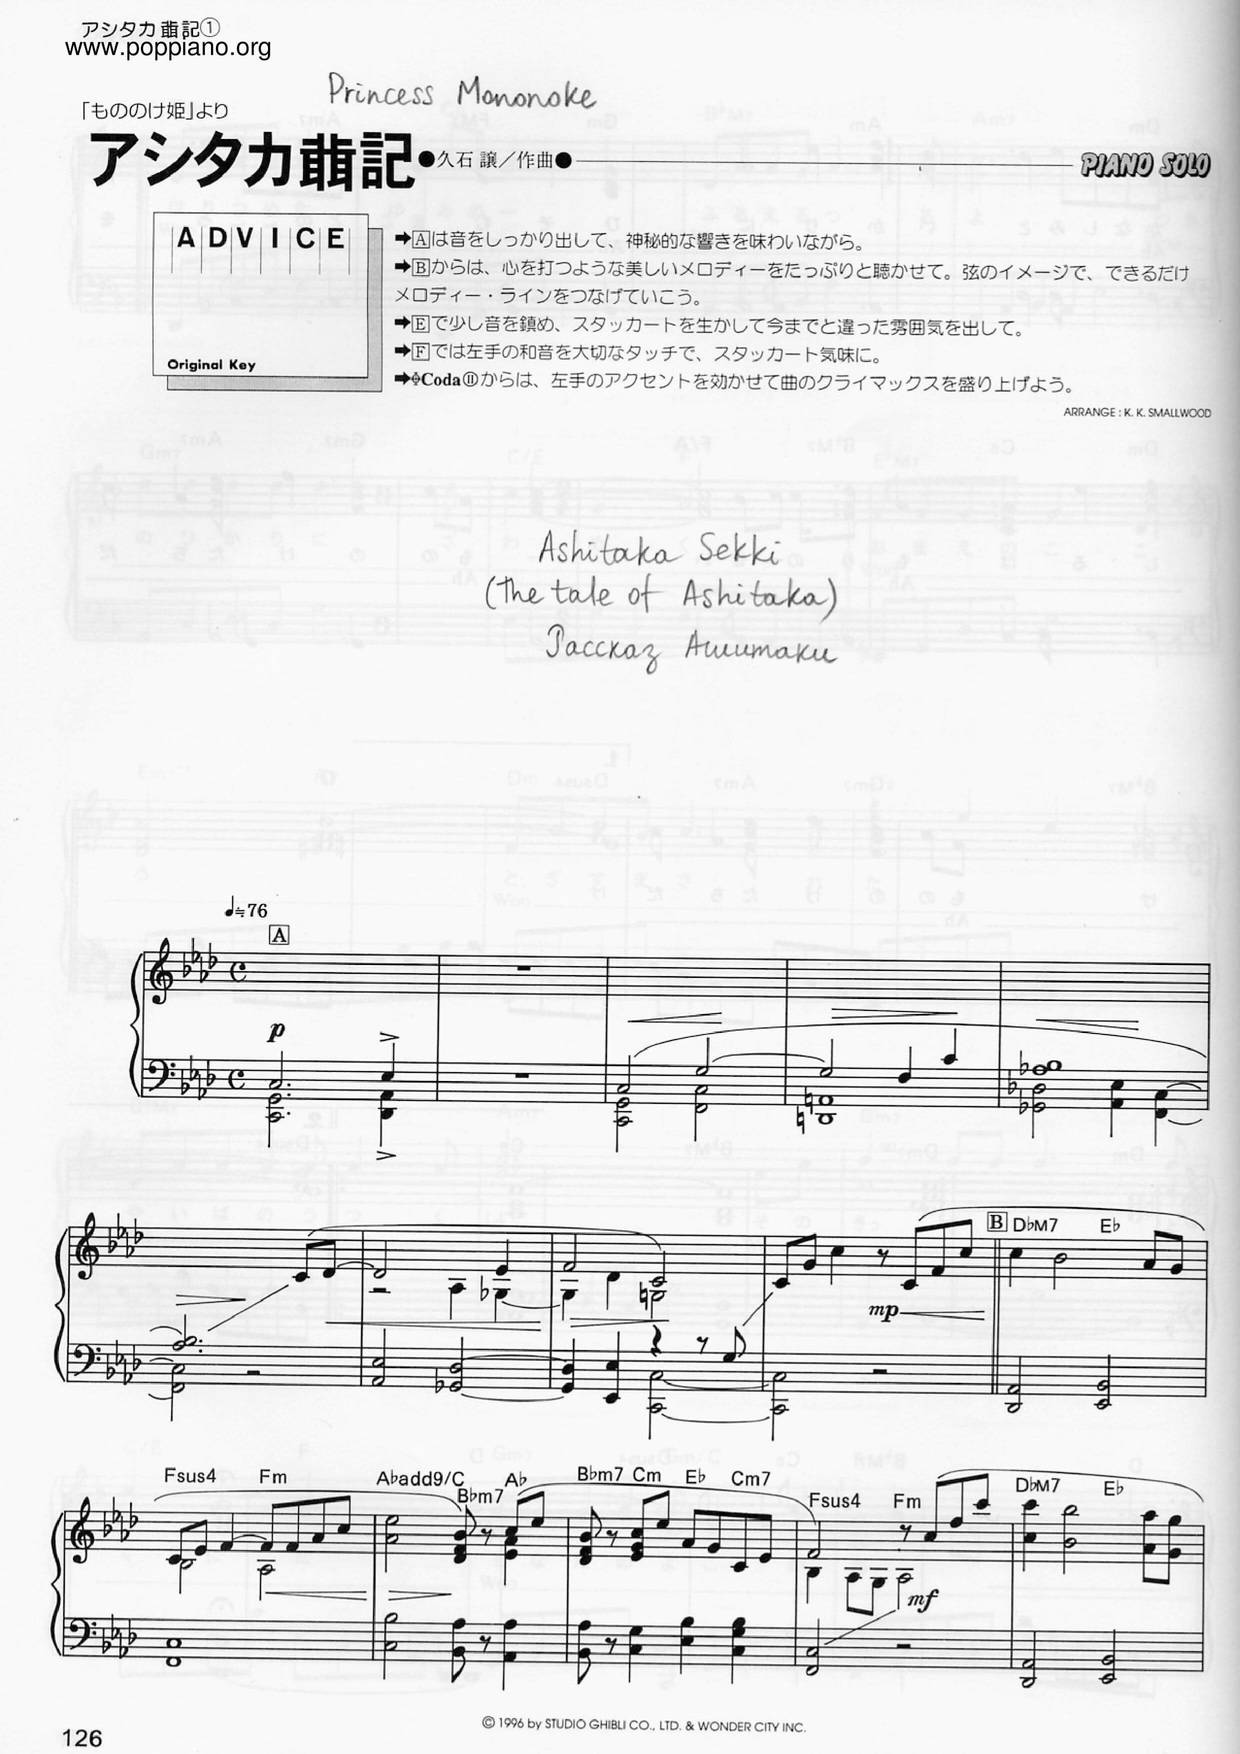 幽靈公主 / 魔法公主 - The Legend of Ashitakaピアノ譜